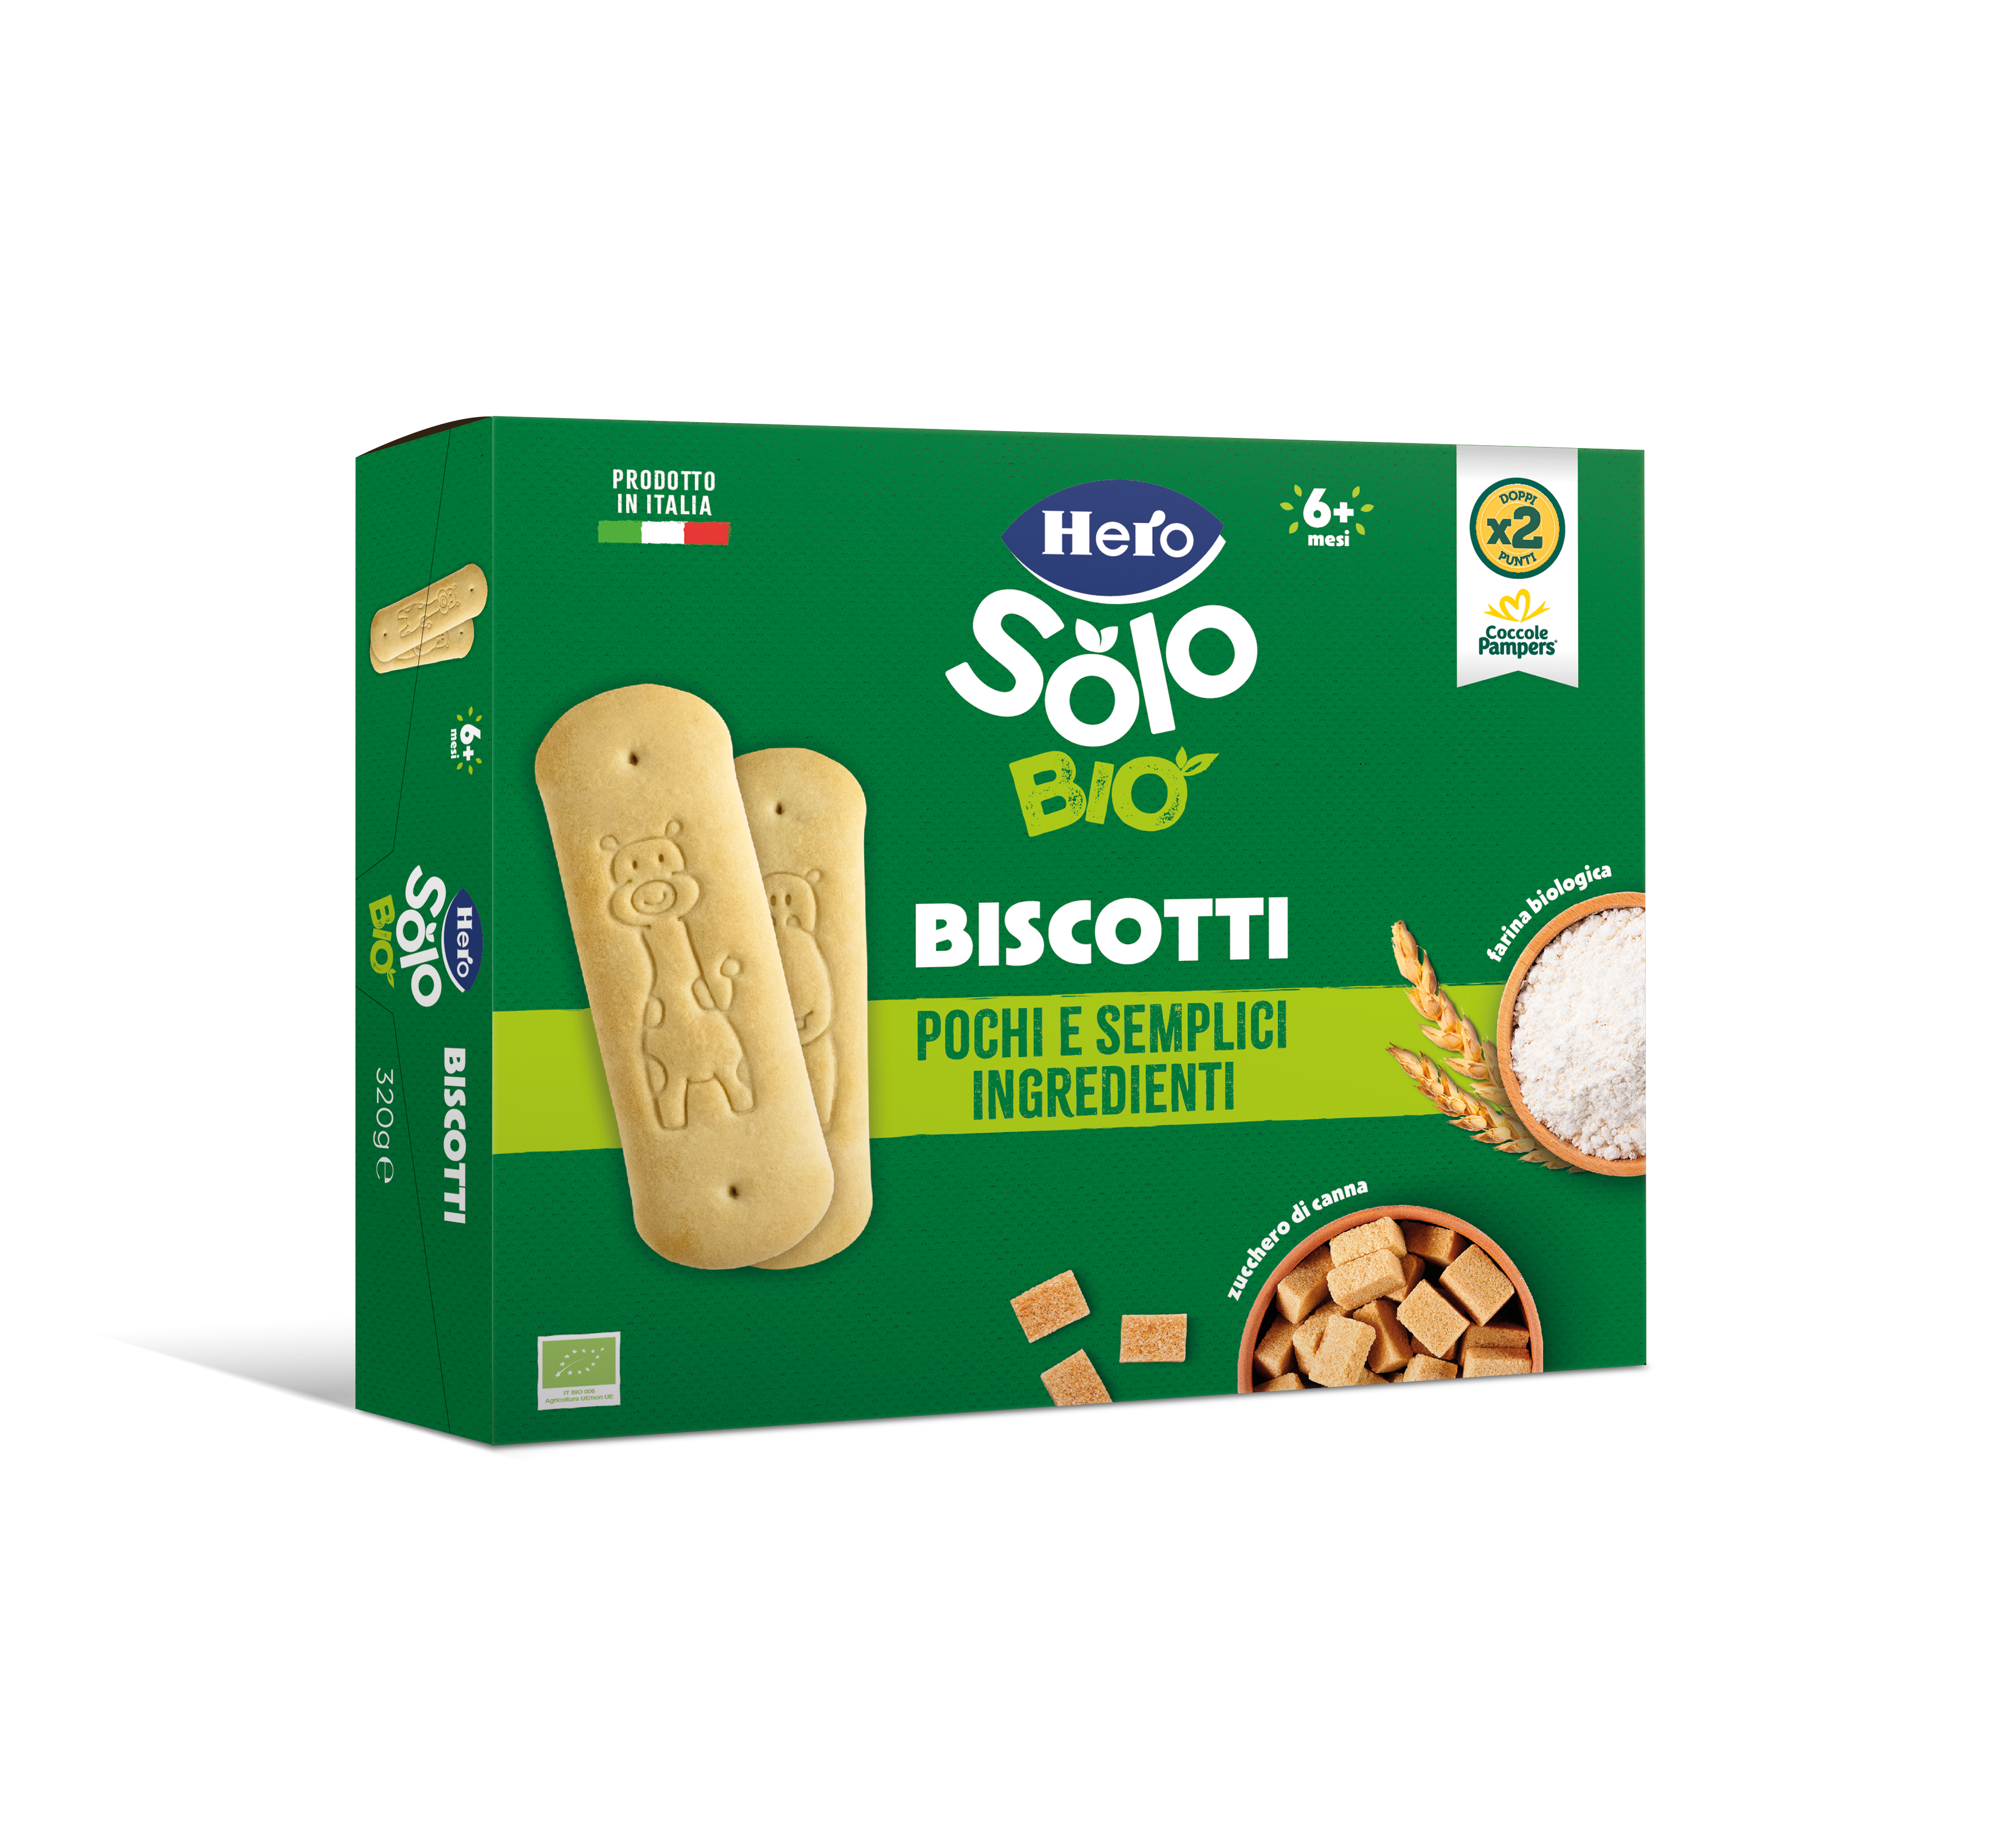 Hero Solo Biscotti biologici solubili, 320 g Acquisti online sempre  convenienti